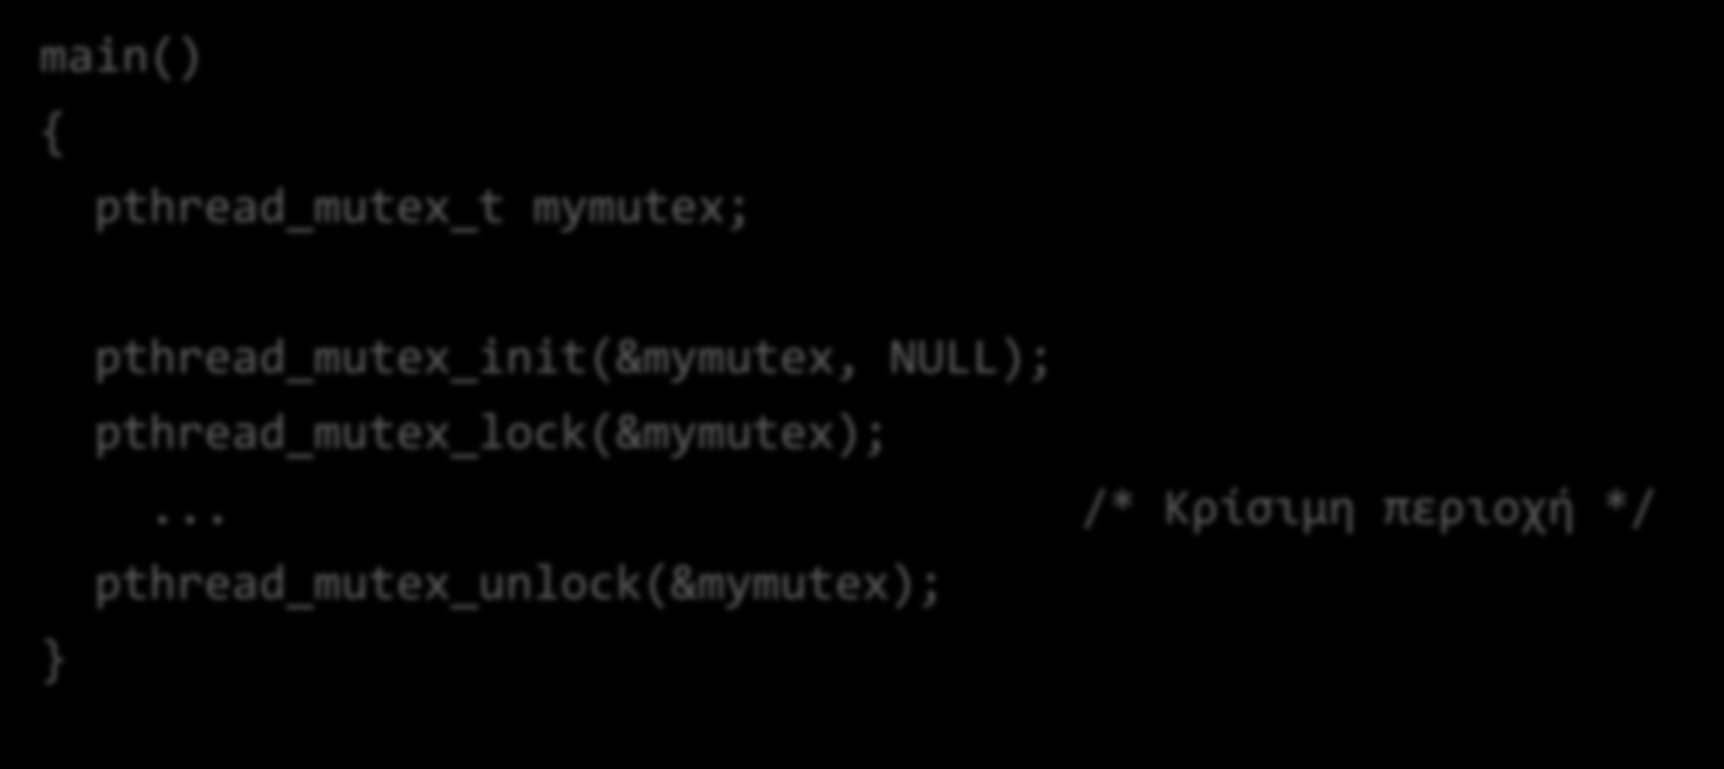 Κλειδαριές στα pthreads: mutexes main() pthread_mutex_t mymutex; pthread_mutex_init(&mymutex, NULL); pthread_mutex_lock(&mymutex);.